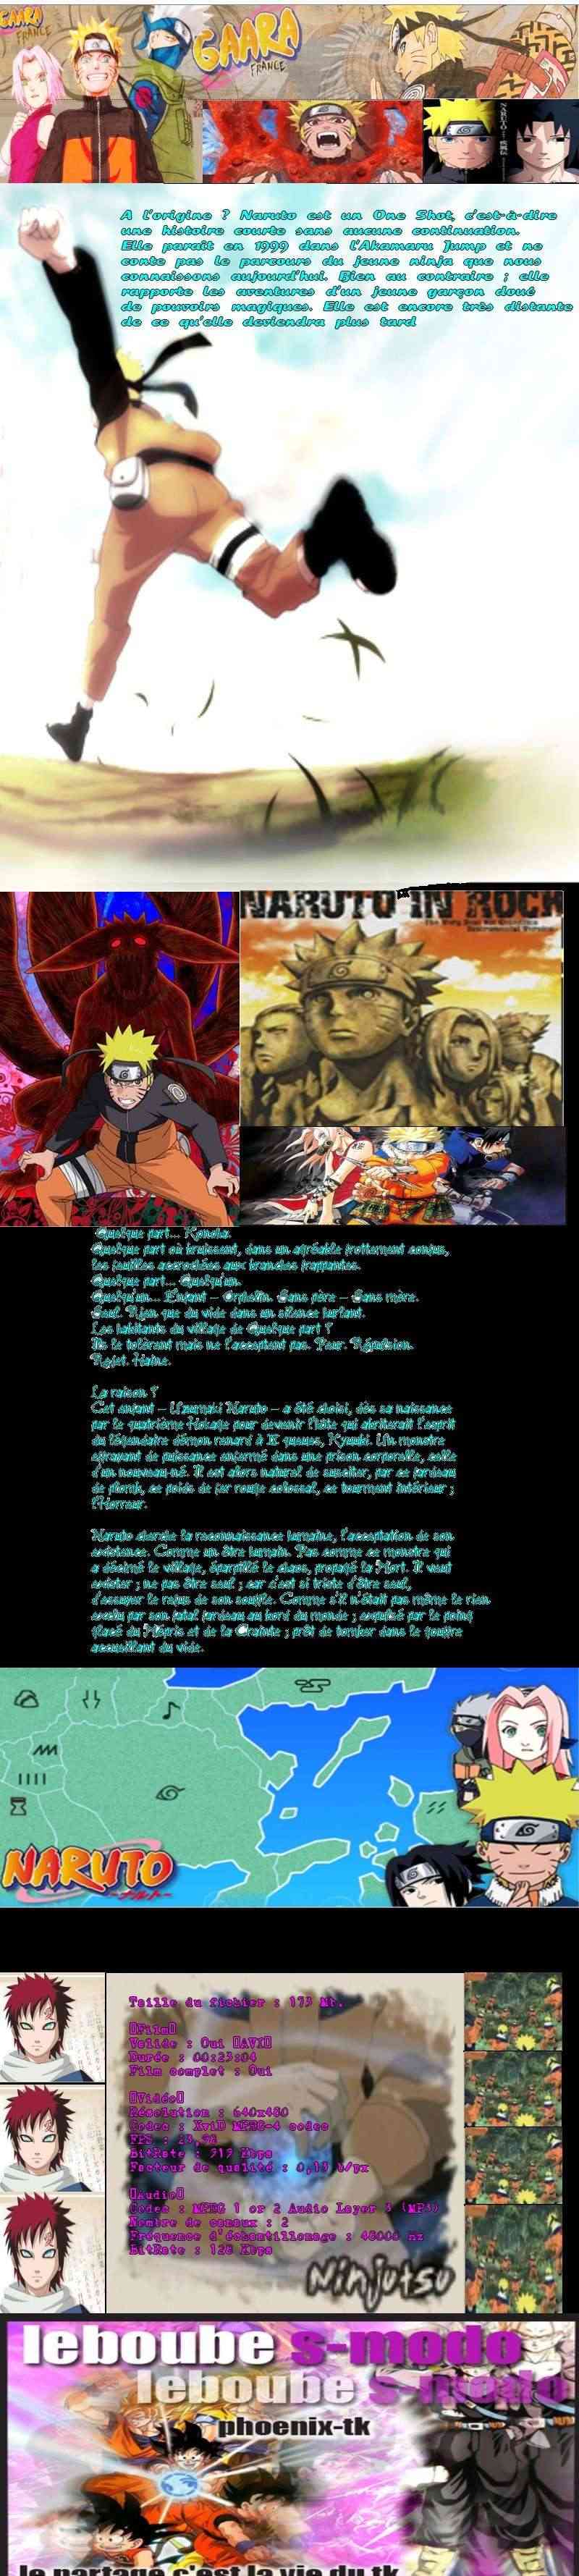 Naruto   Episode 137   Les rues malfamées  L'ombre du clan Fuuma[phoenix tk com] avi preview 0